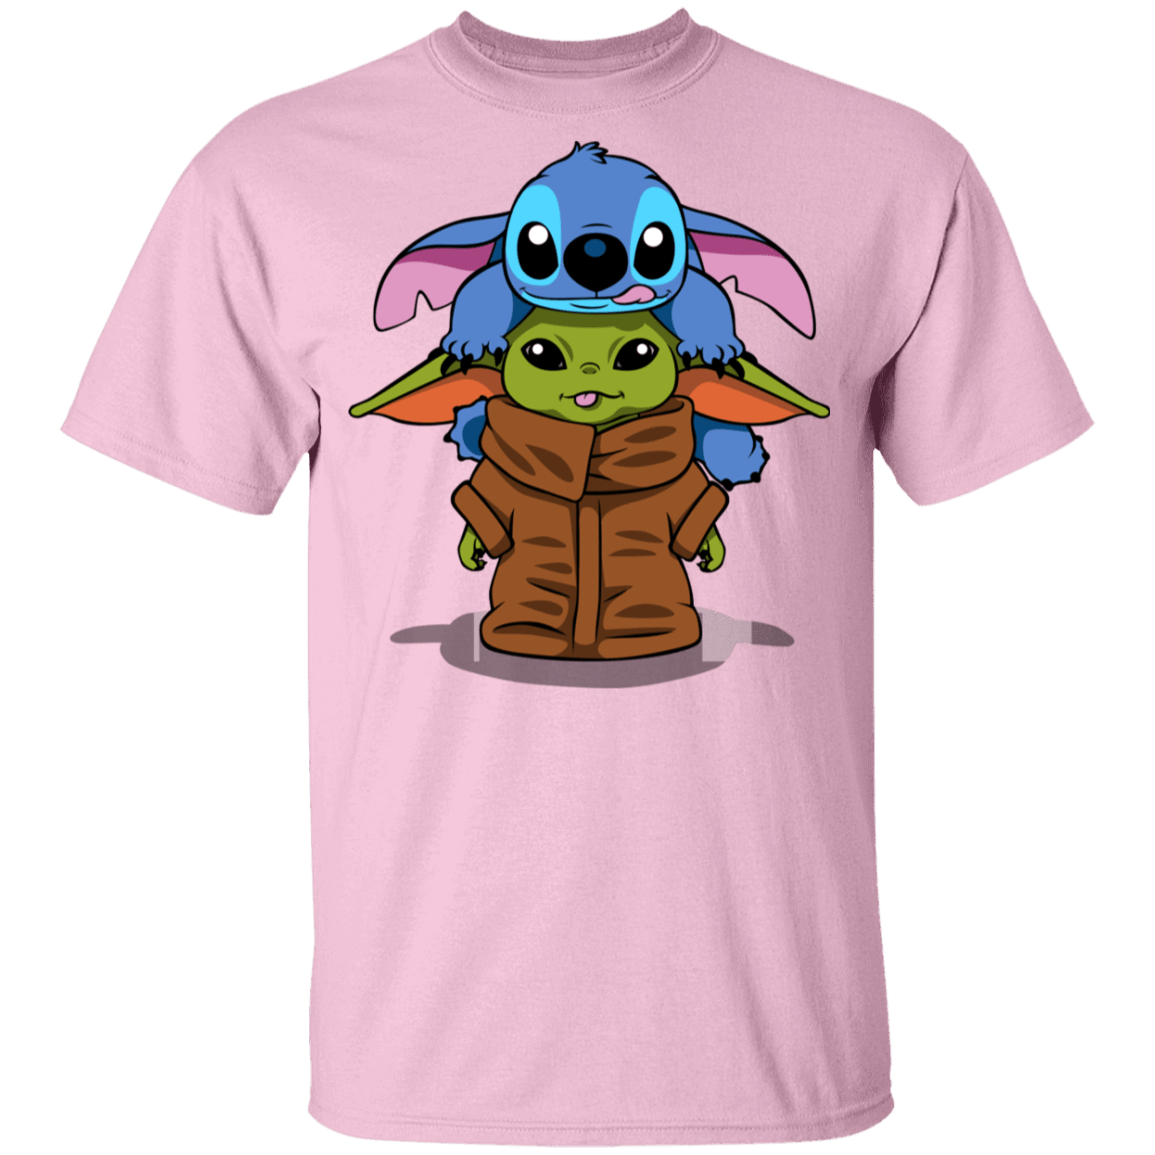 T-Shirts Light Pink / YXS Stitch Yoda Youth T-Shirt